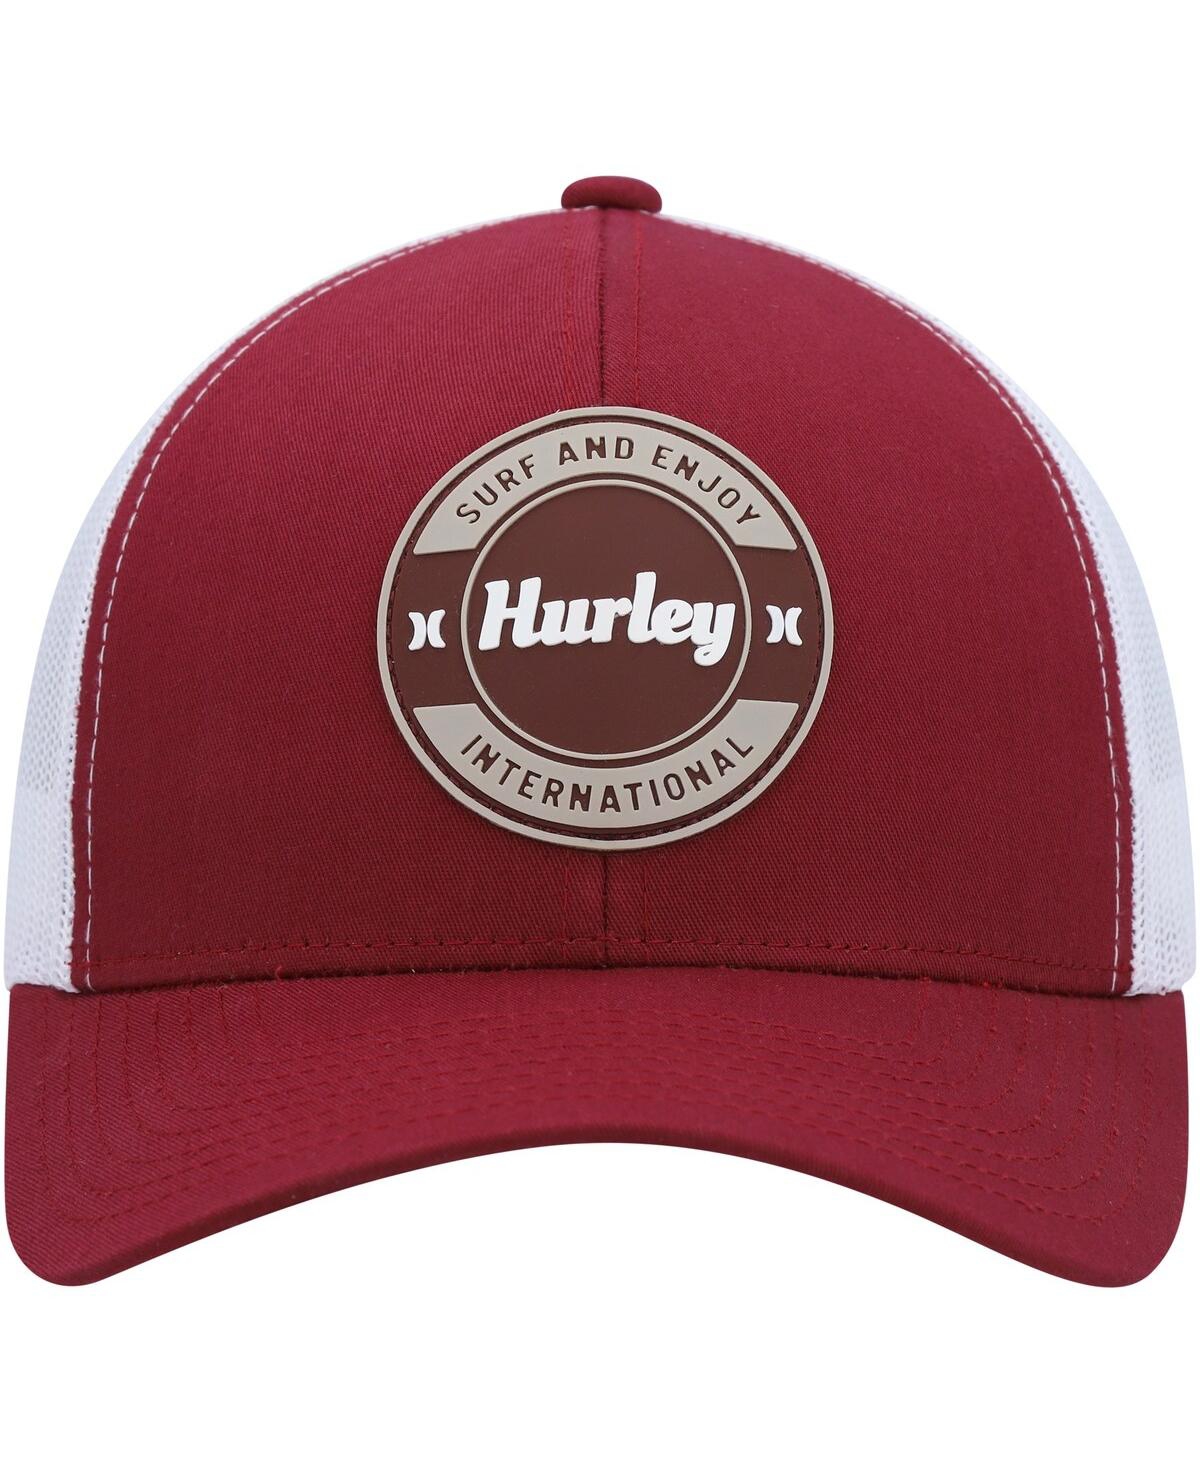 Shop Hurley Men's  Burgundy Offshore Trucker Snapback Hat